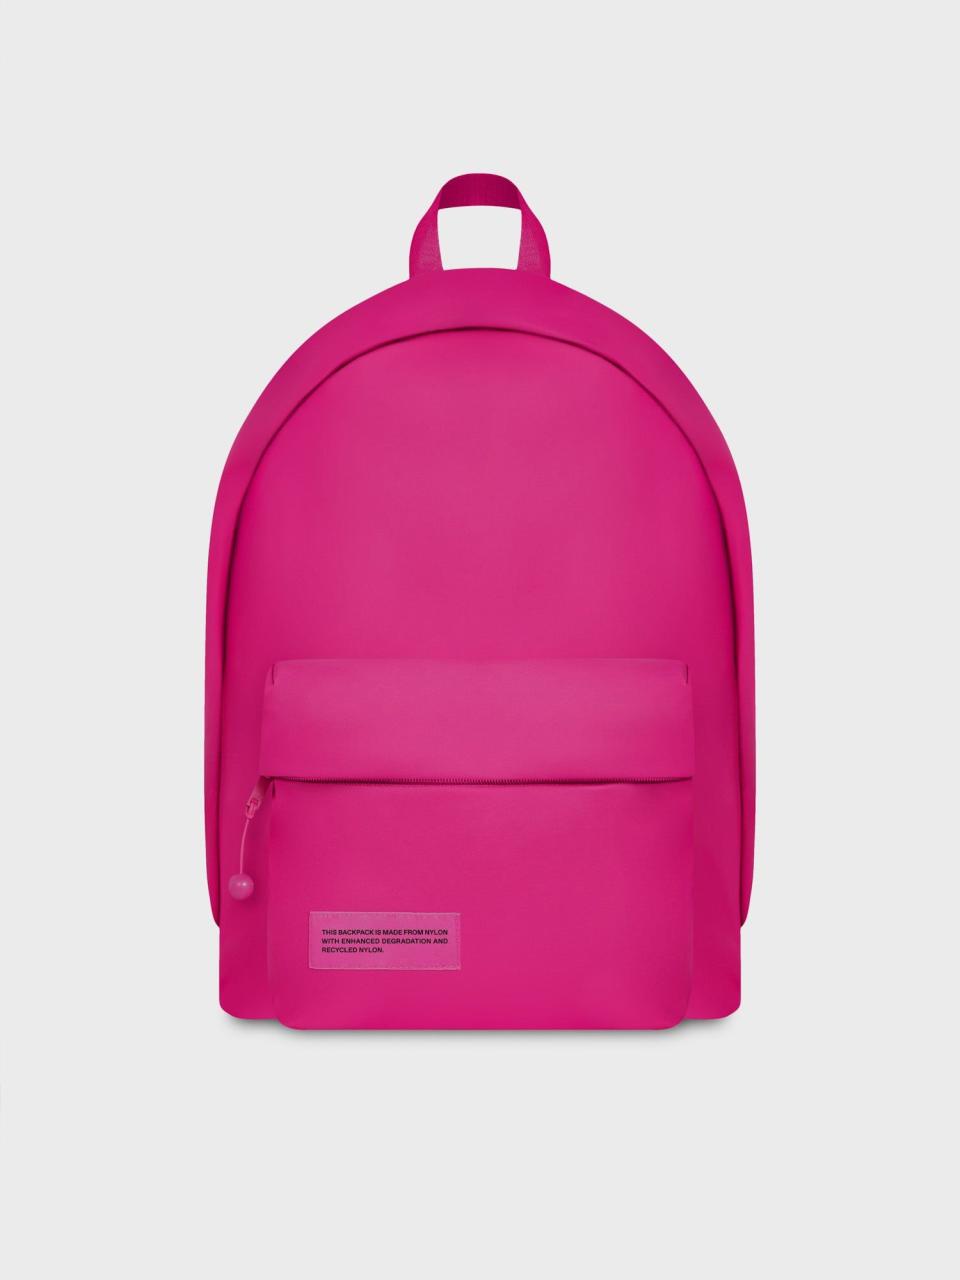 9) Nylon Padded Backpack